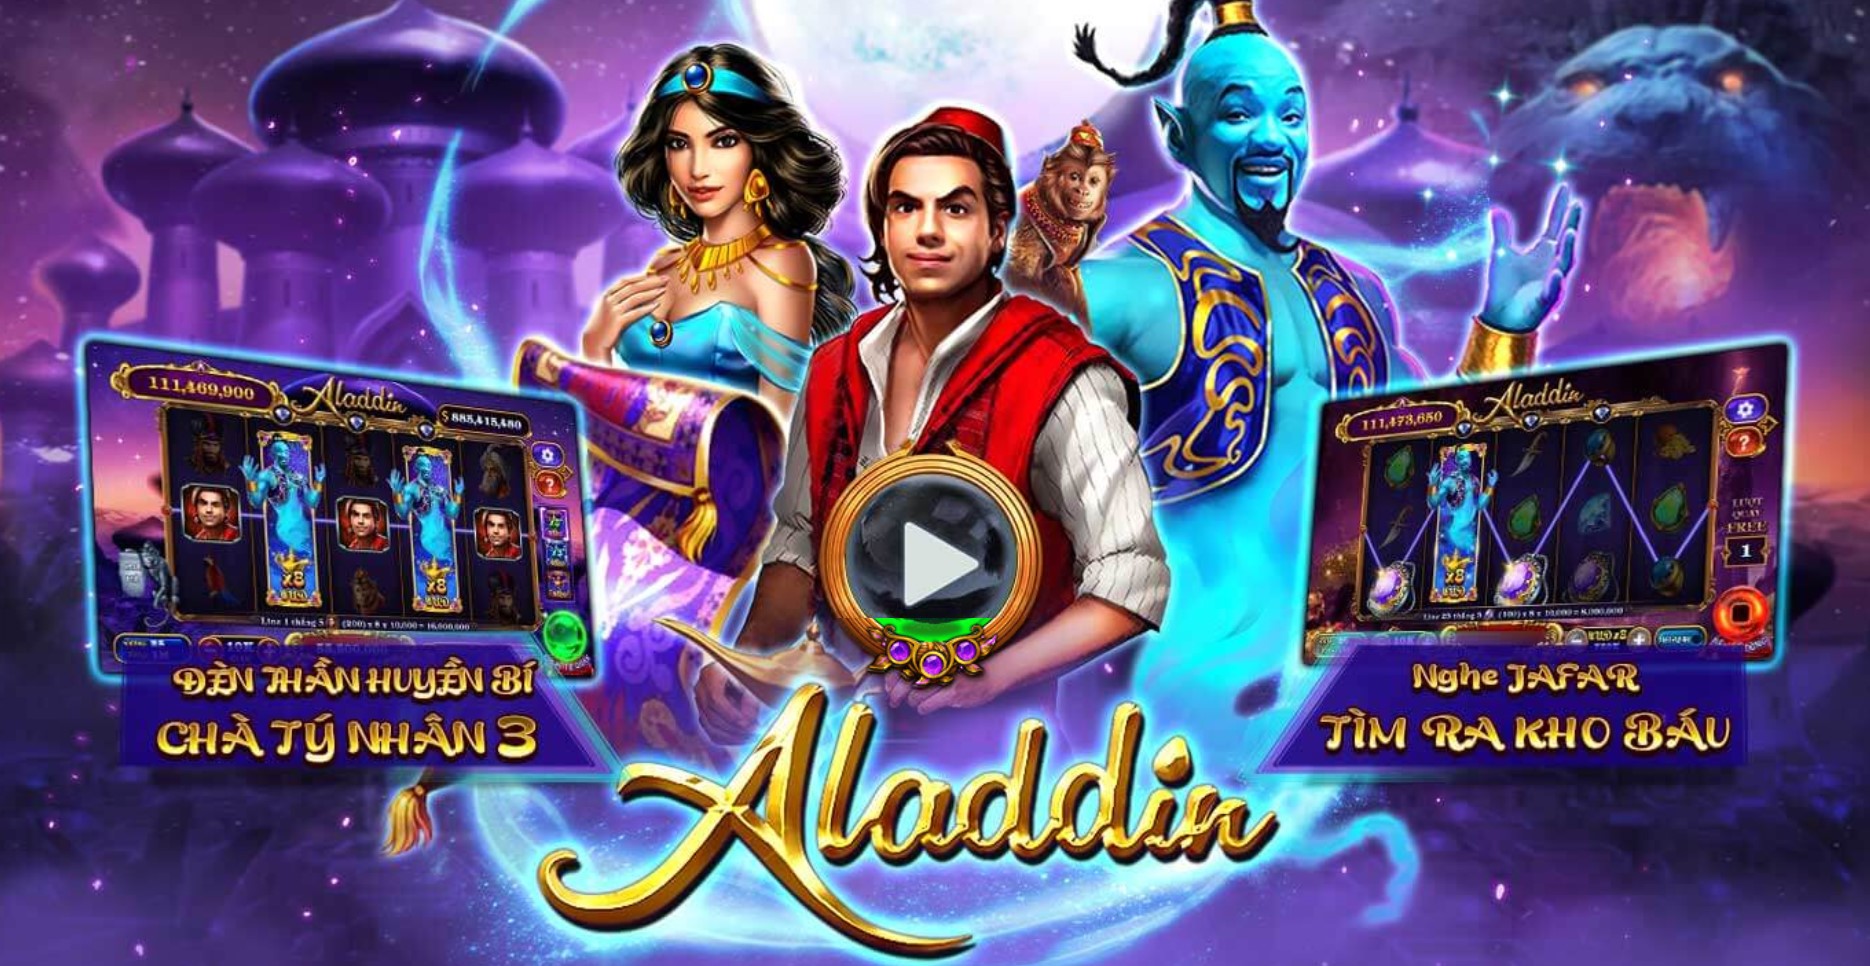 Một vài ưu điểm của game nổ hũ Aladdin trên May88